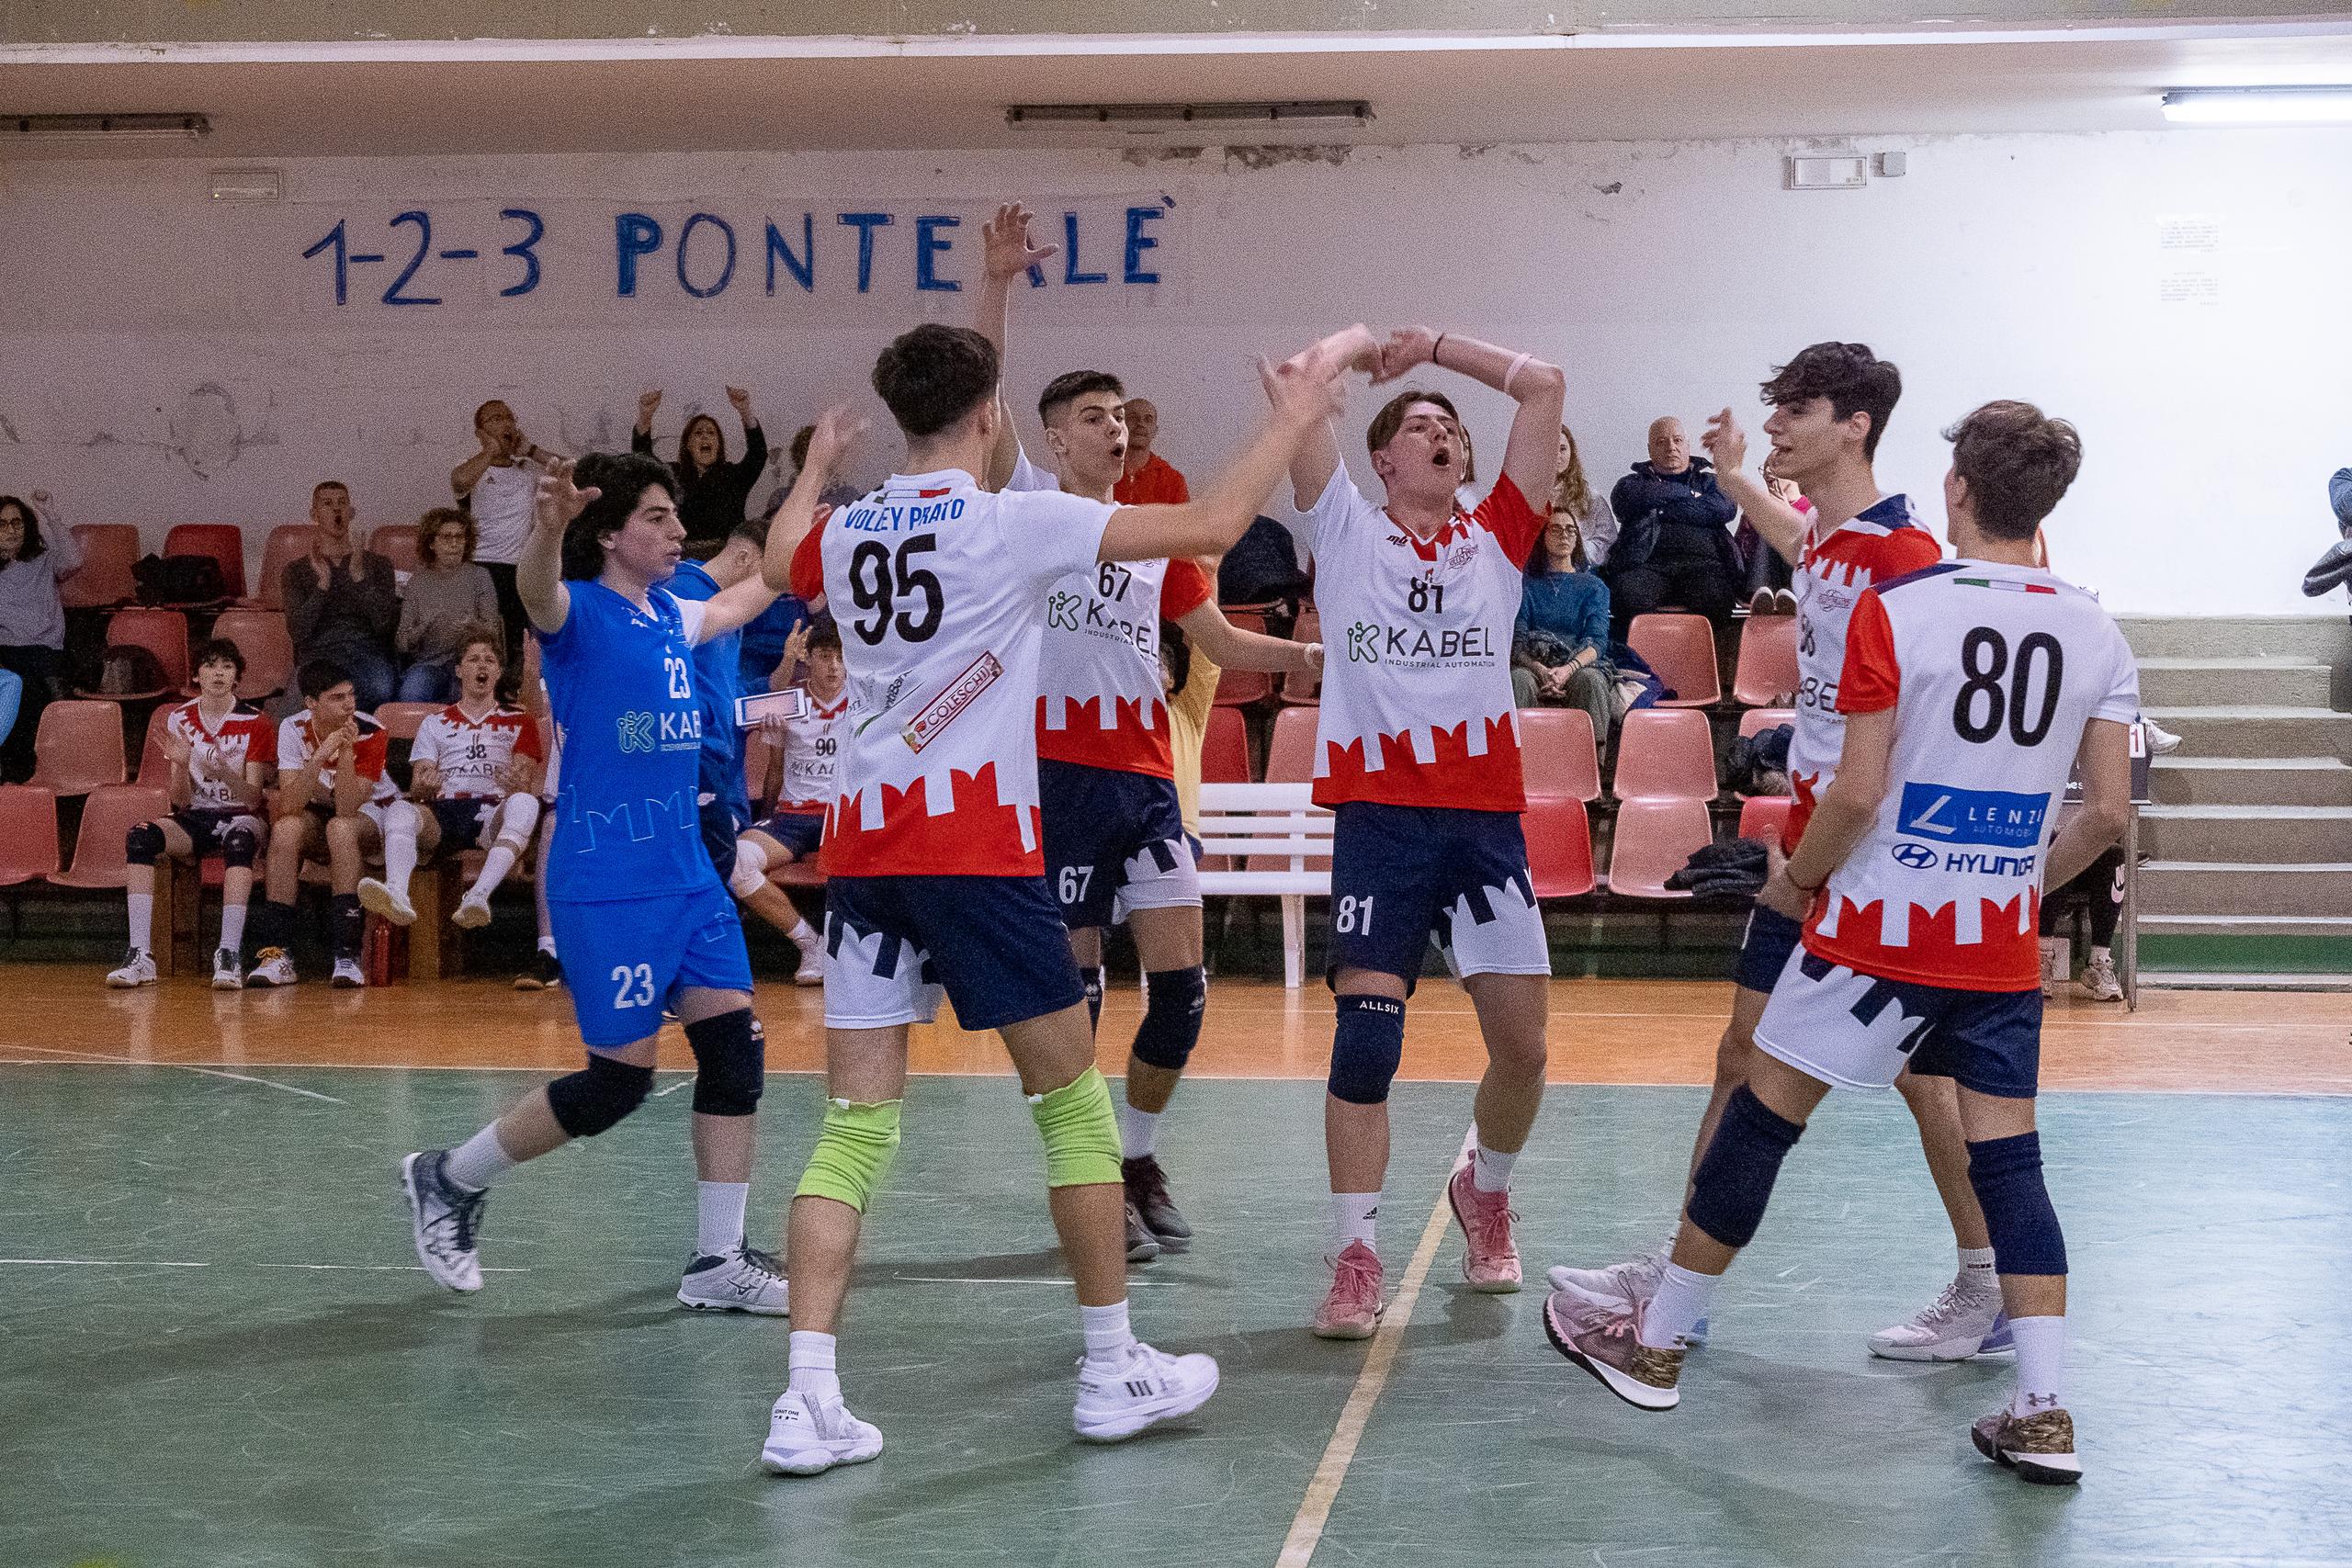 1° Divisione: Volley Prato cede a Monte a Moriano, dopo una gara bella e combattuta